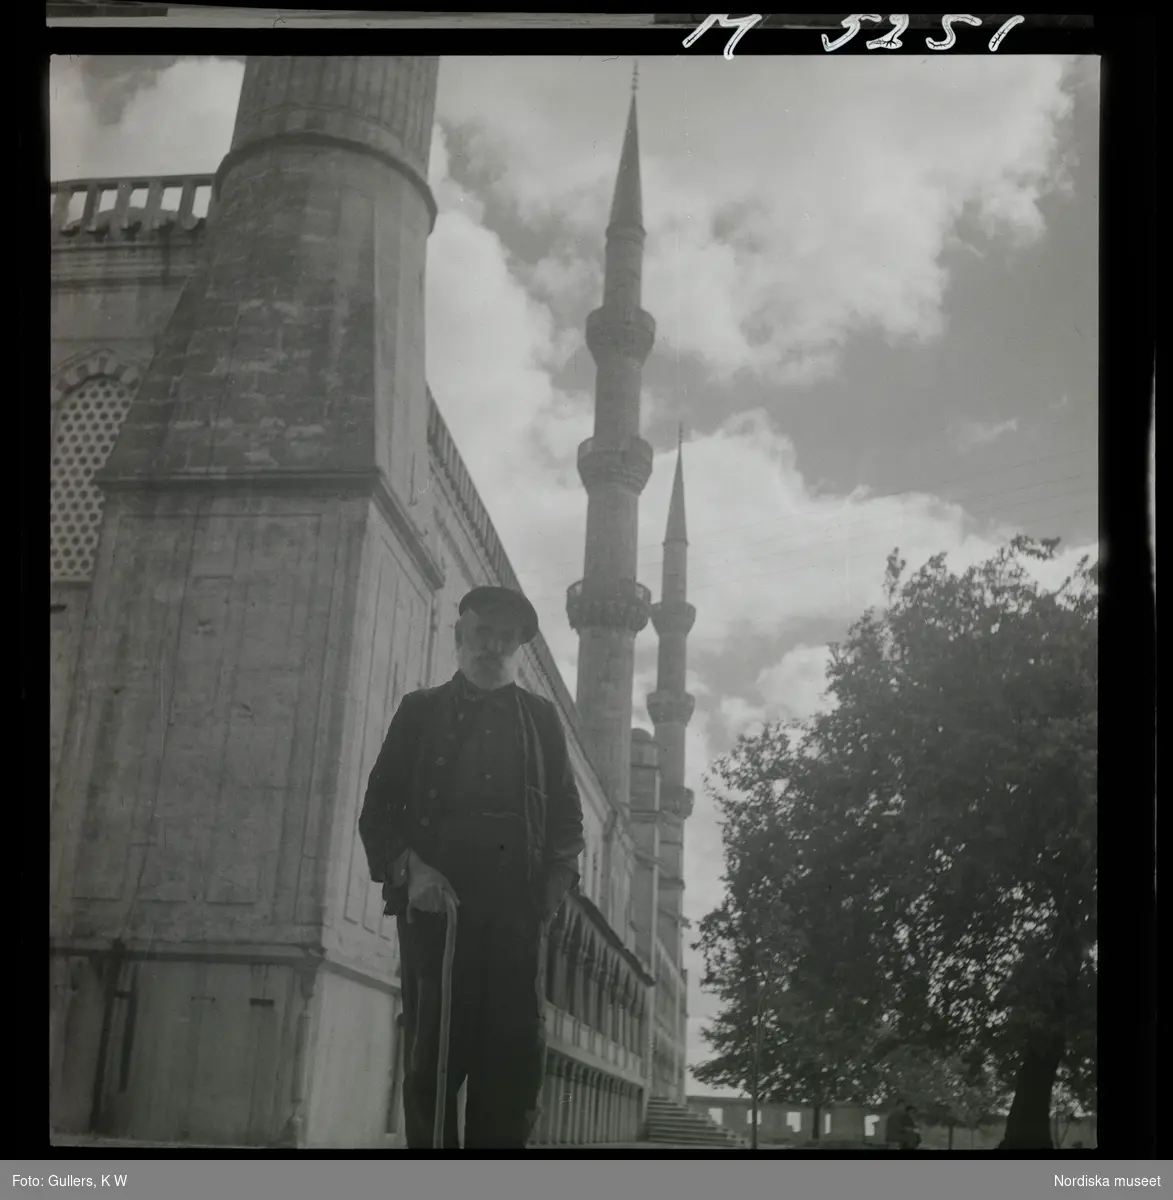 1717/K Istanbul allmänt. En man med käpp framför moské.